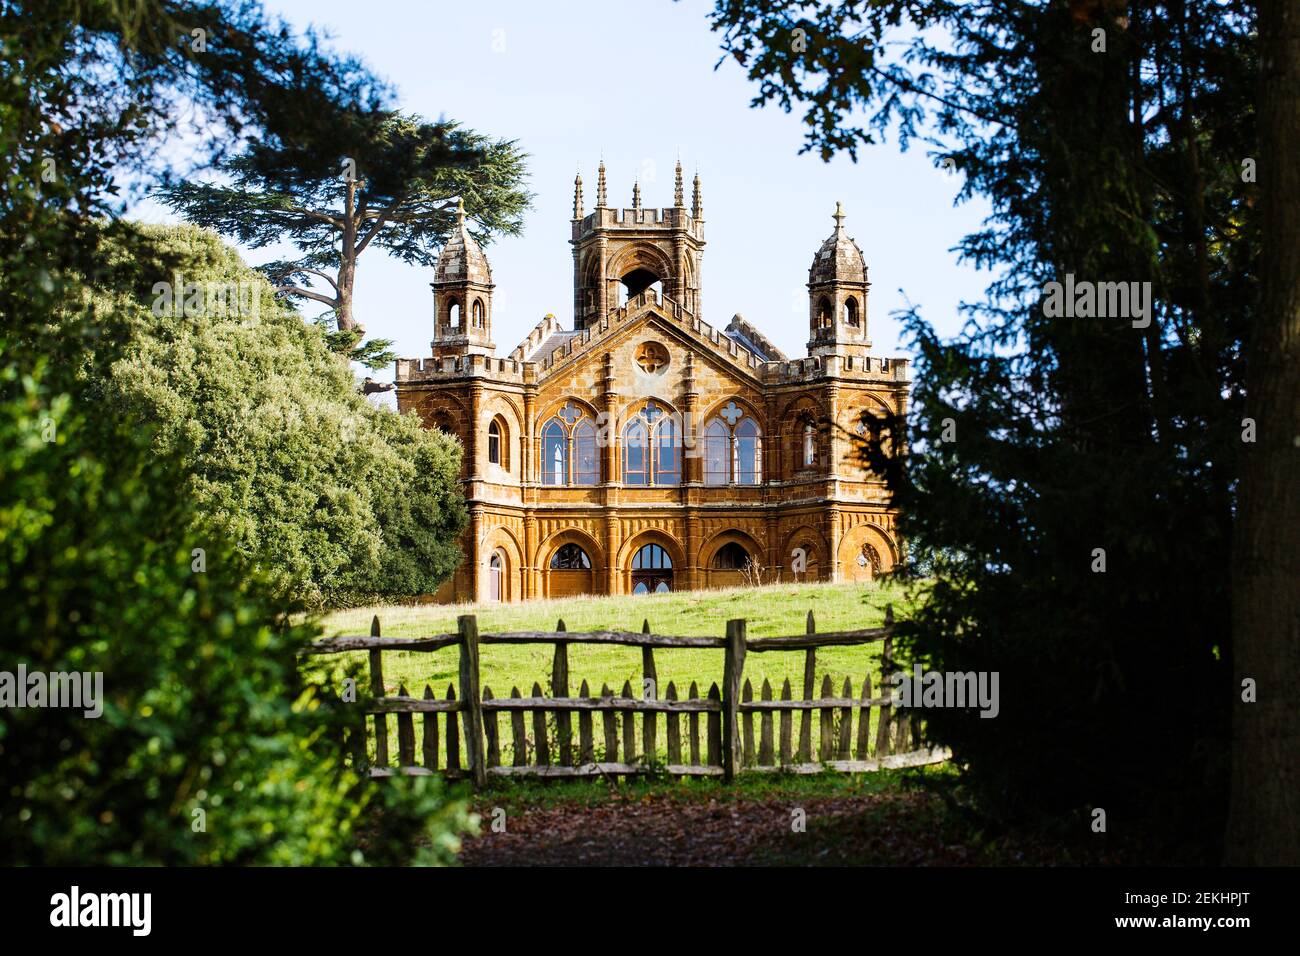 Gothic Template à Stowe, une propriété de National Trust à Berkshire, Royaume-Uni Banque D'Images